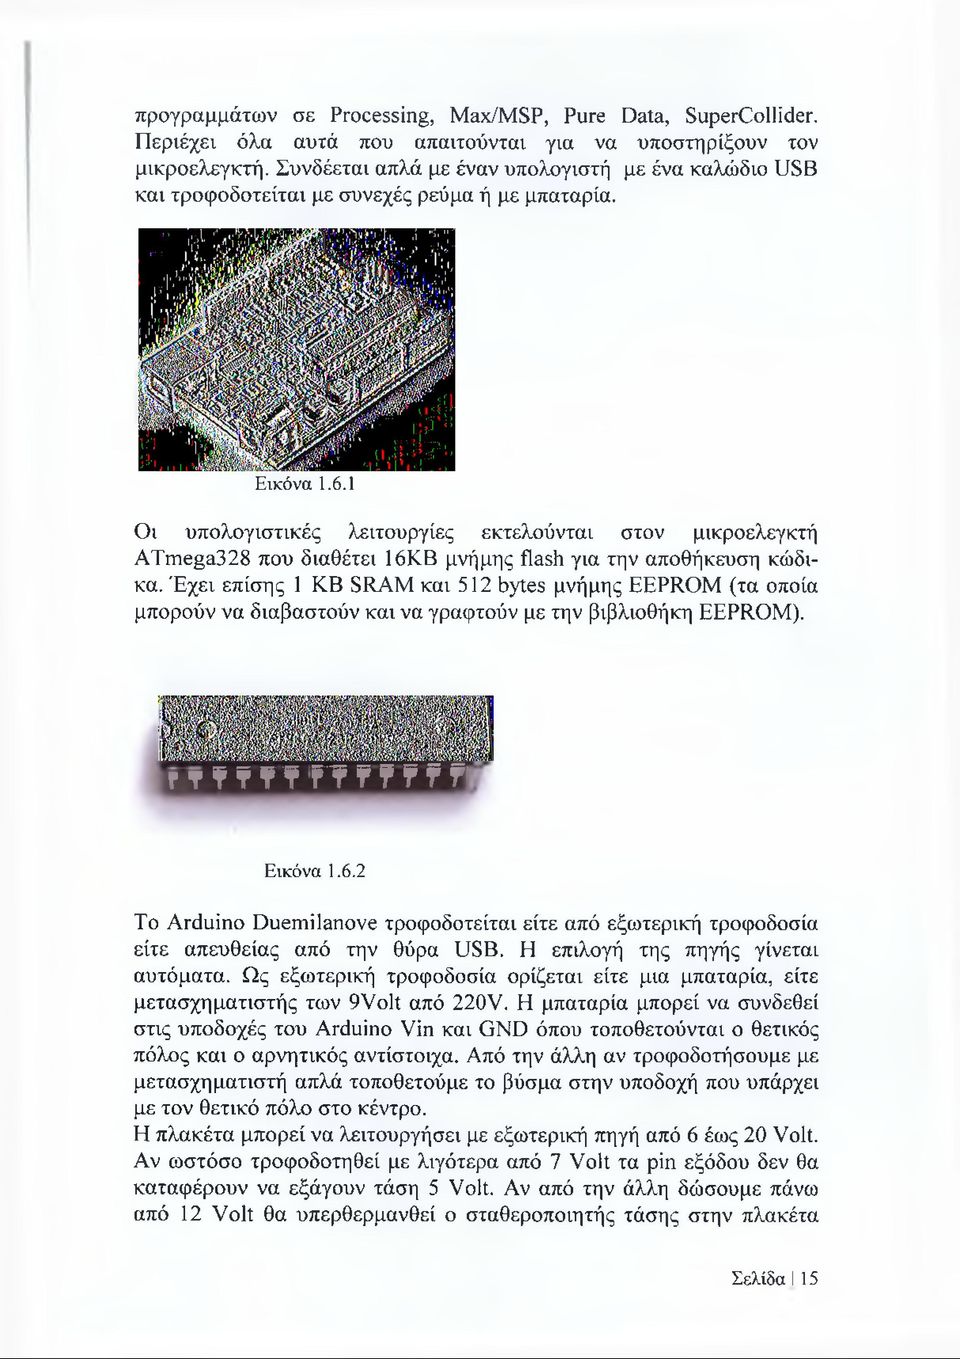 1 Οι υπολογιστικές λειτουργίες εκτελούνται στον μικροελεγκτή ATmega328 που διαθέτει 16ΚΒ μνήμης flash για την αποθήκευση κώδικα.